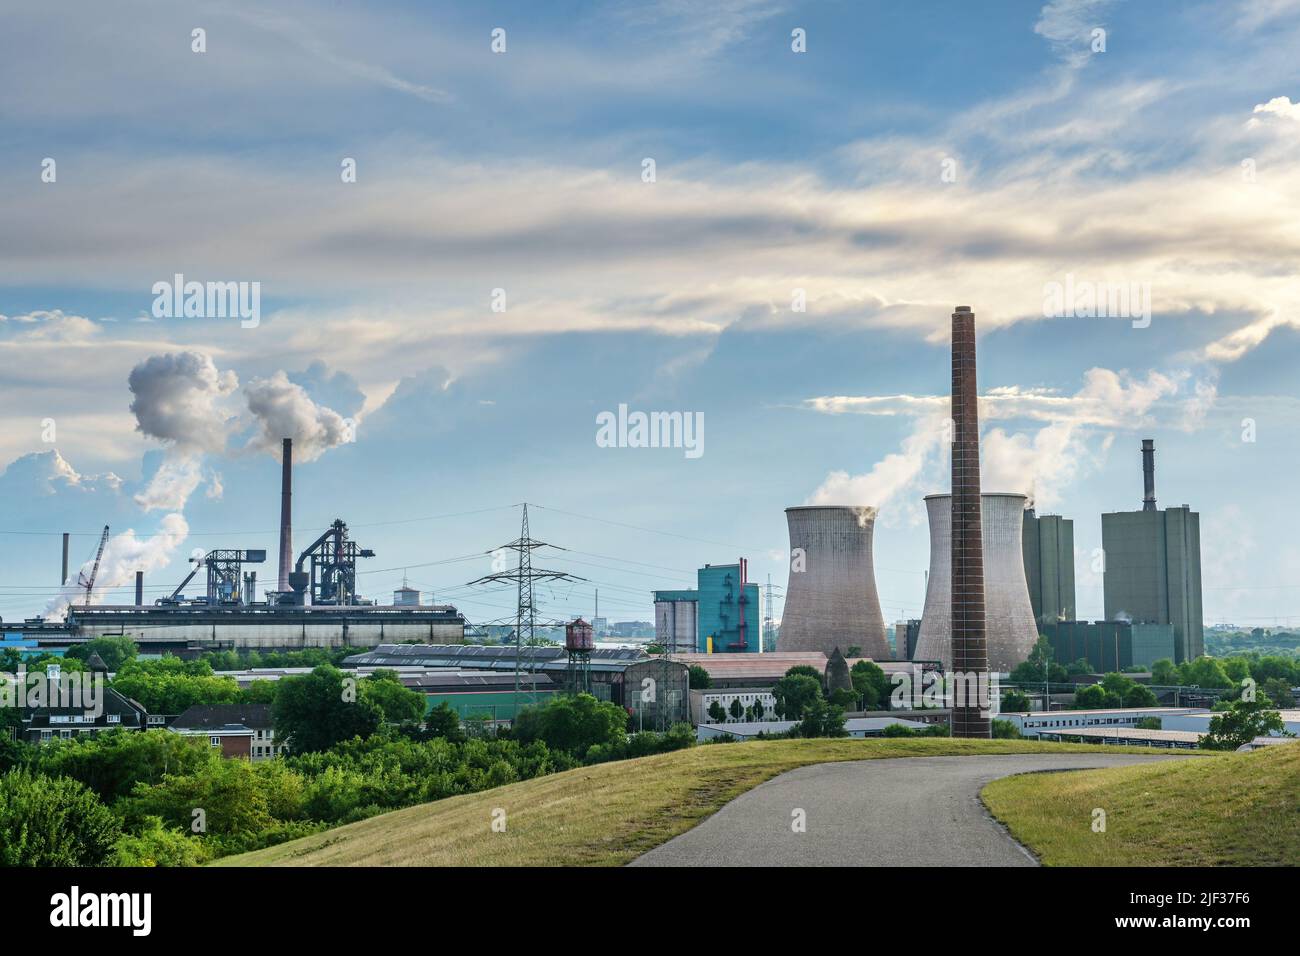 HKM, acciaierie Krupp Mannesmann e torri centrali elettriche, panorama paesaggistico dell'industria pesante utilizzando l'energia fossile a Duisburg, Germania, cielo blu con Foto Stock